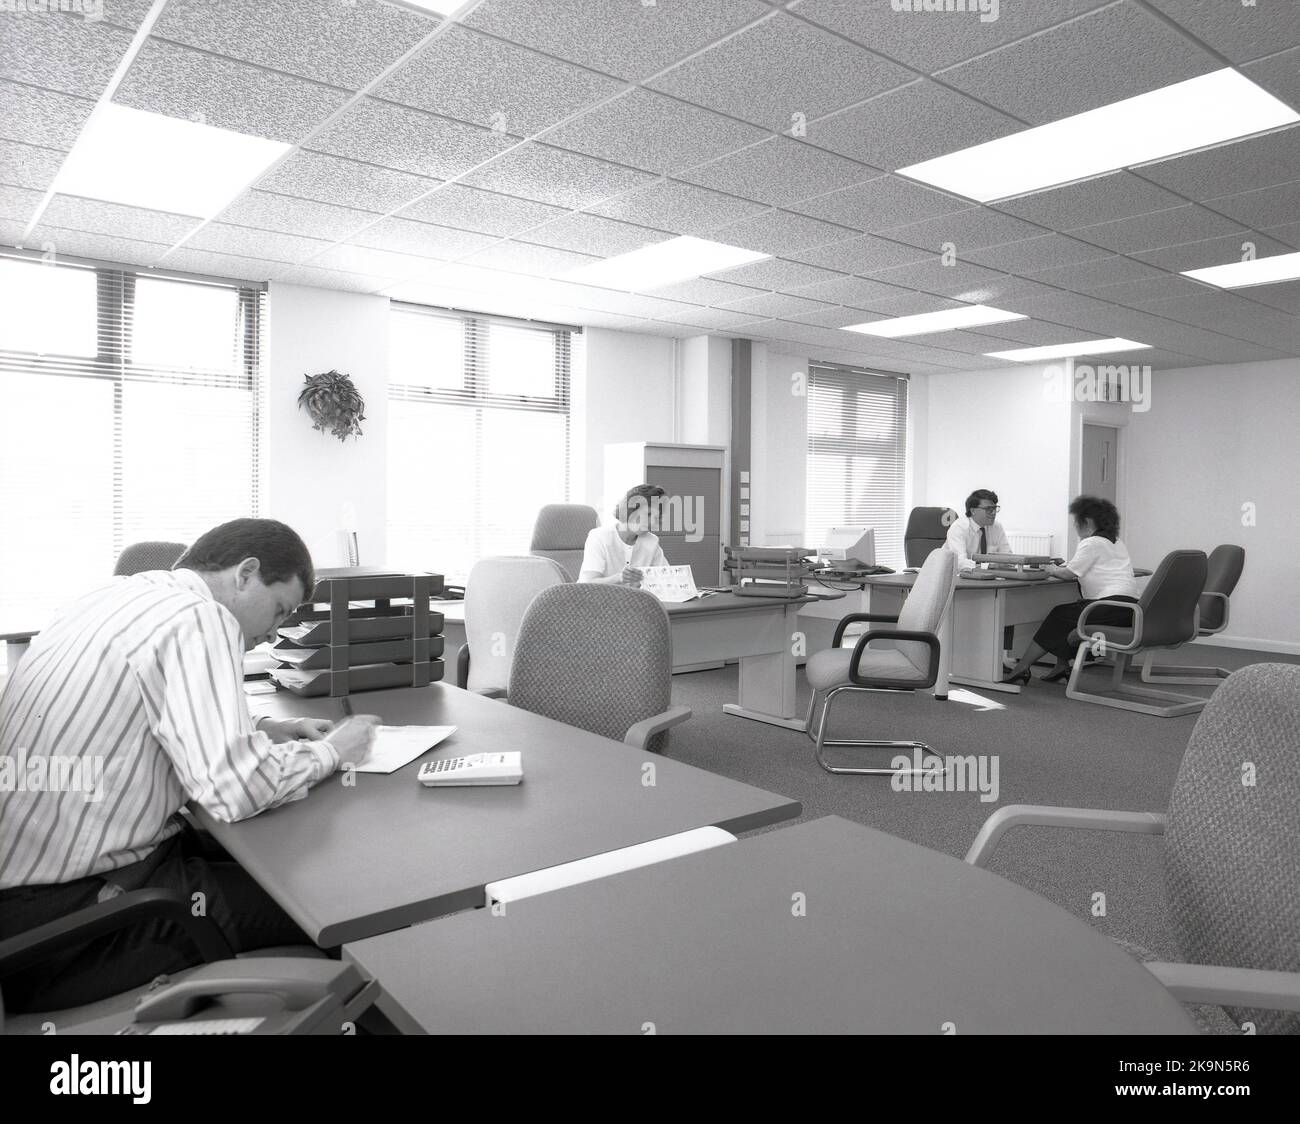 1989, dipendenti storici, di sesso maschile e femminile che lavorano alle loro scrivanie in uno spazioso ufficio a pianta aperta, Inghilterra, Regno Unito. Si possono vedere grandi scrivanie semicircolari con sedie circostanti per riunioni informali e personal computer dell'epoca. Foto Stock